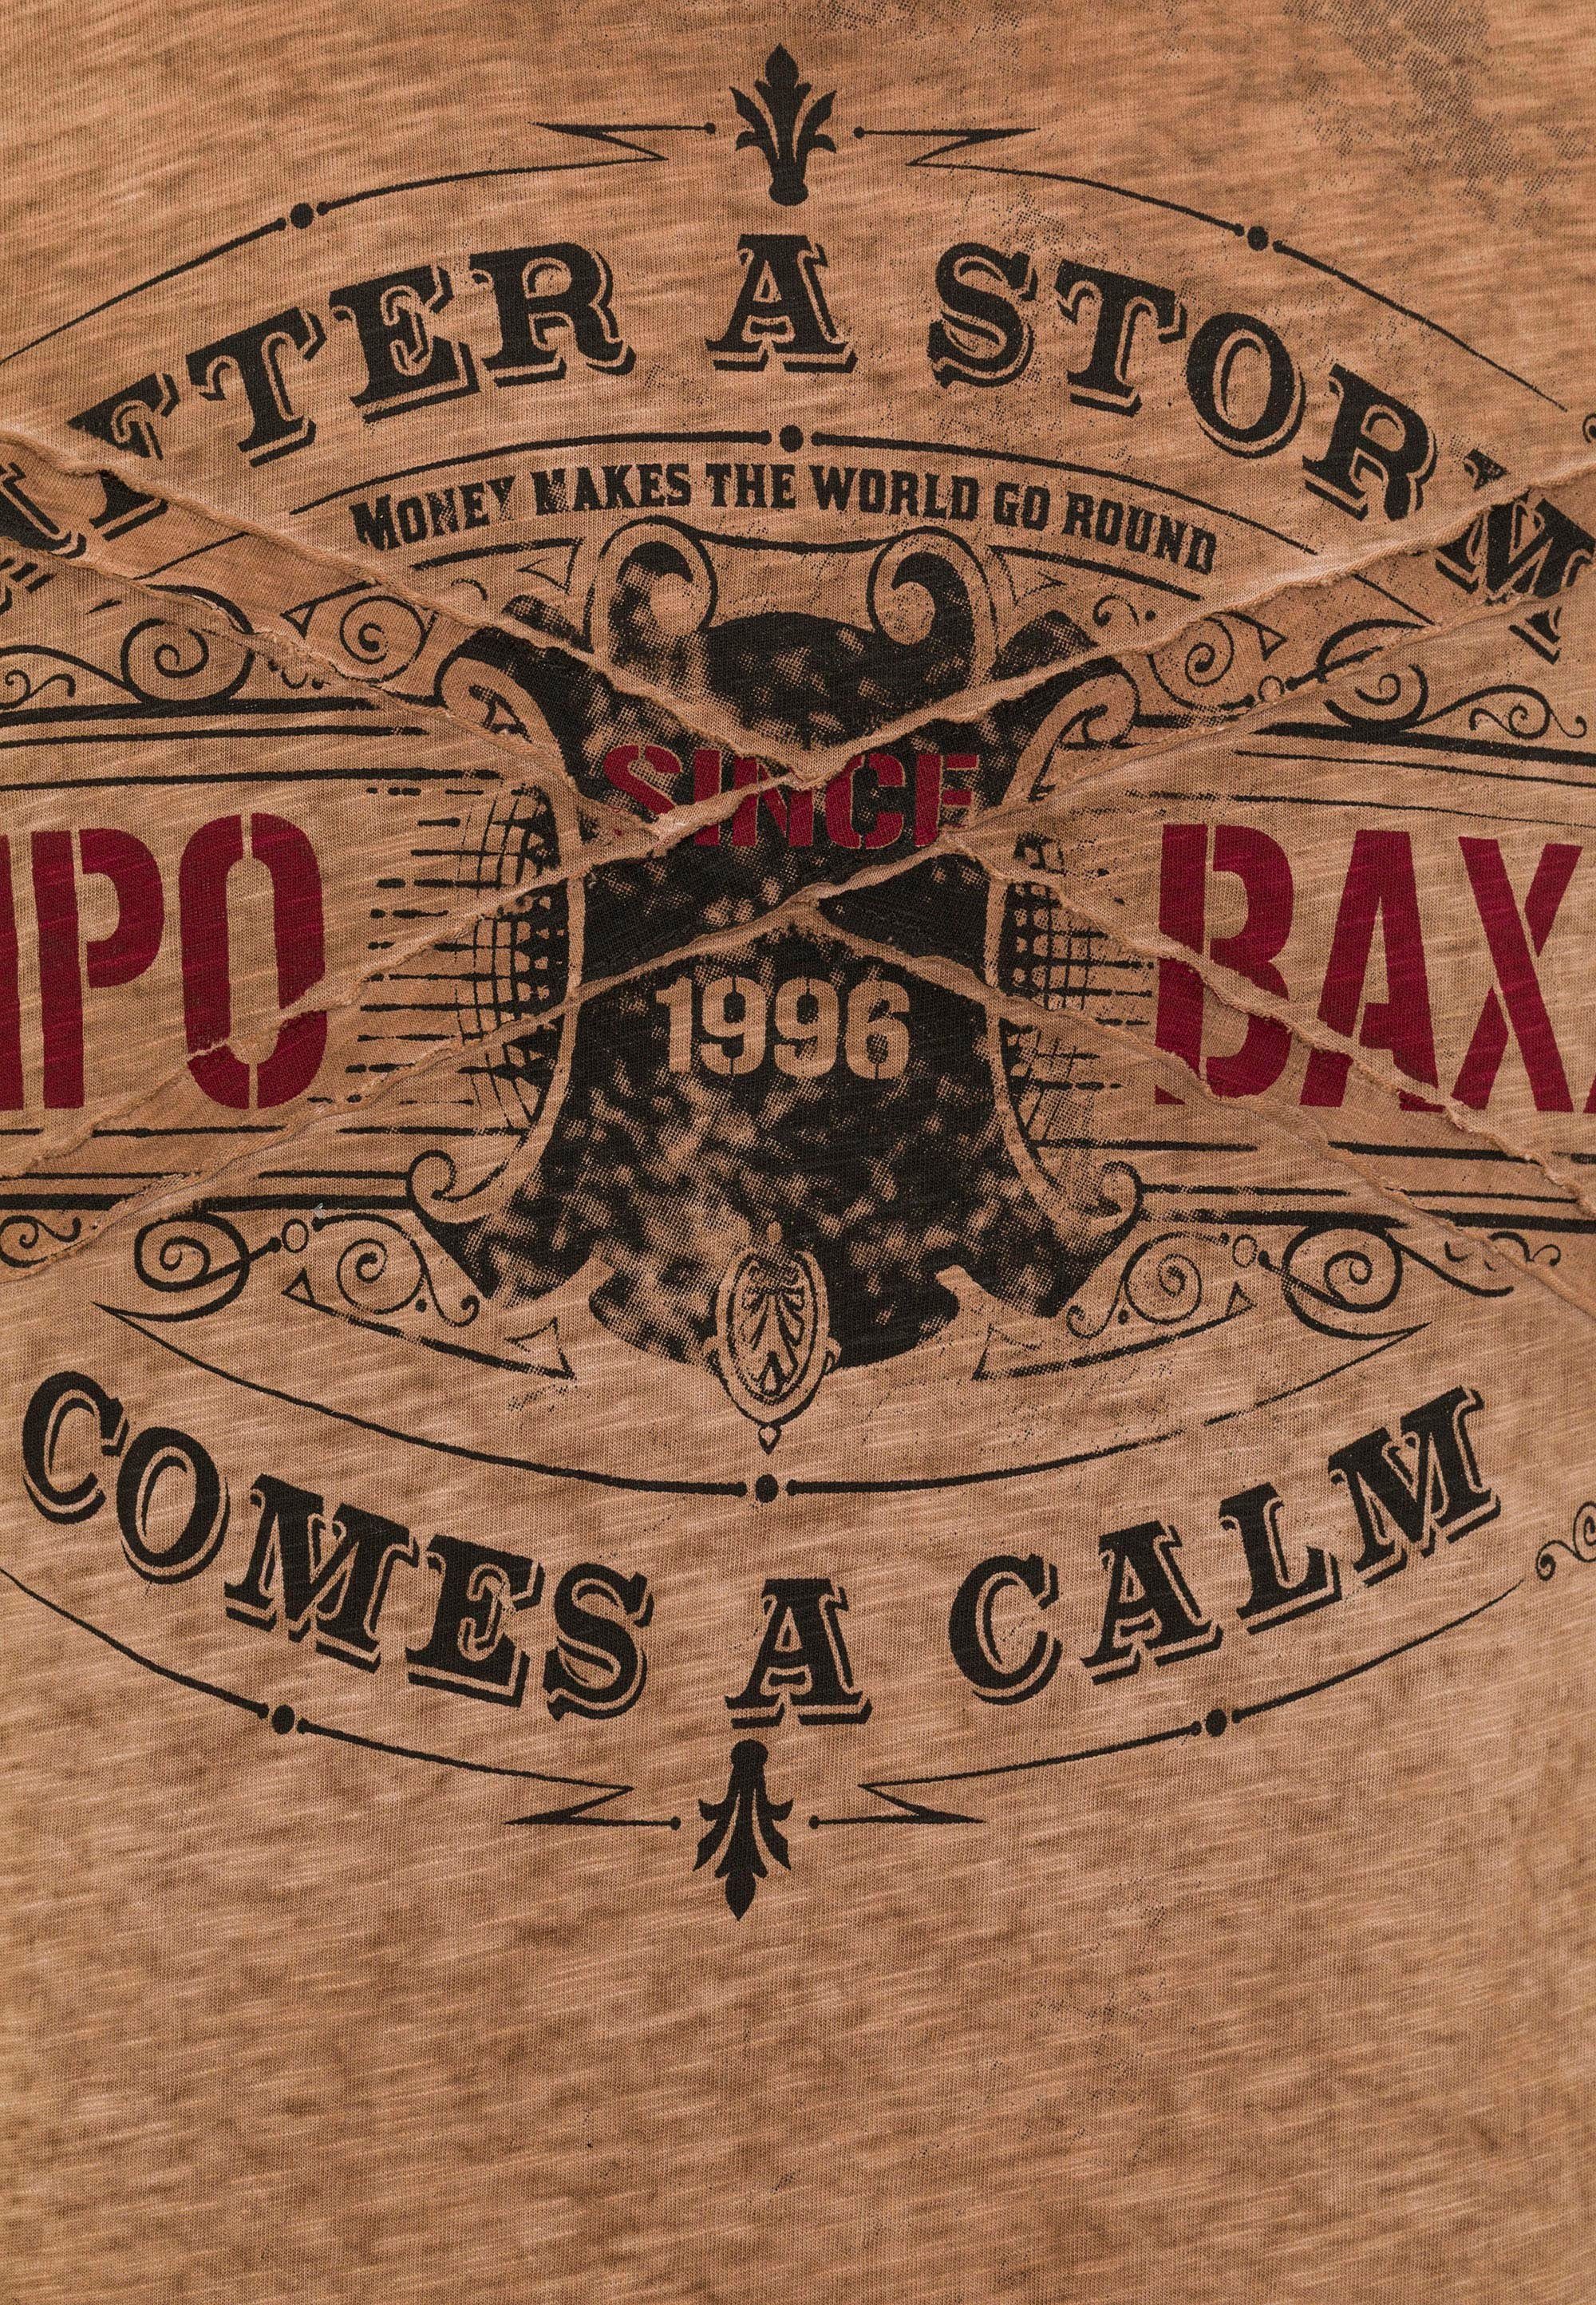 T-Shirt Cipo Baxx & braun im VintageLook